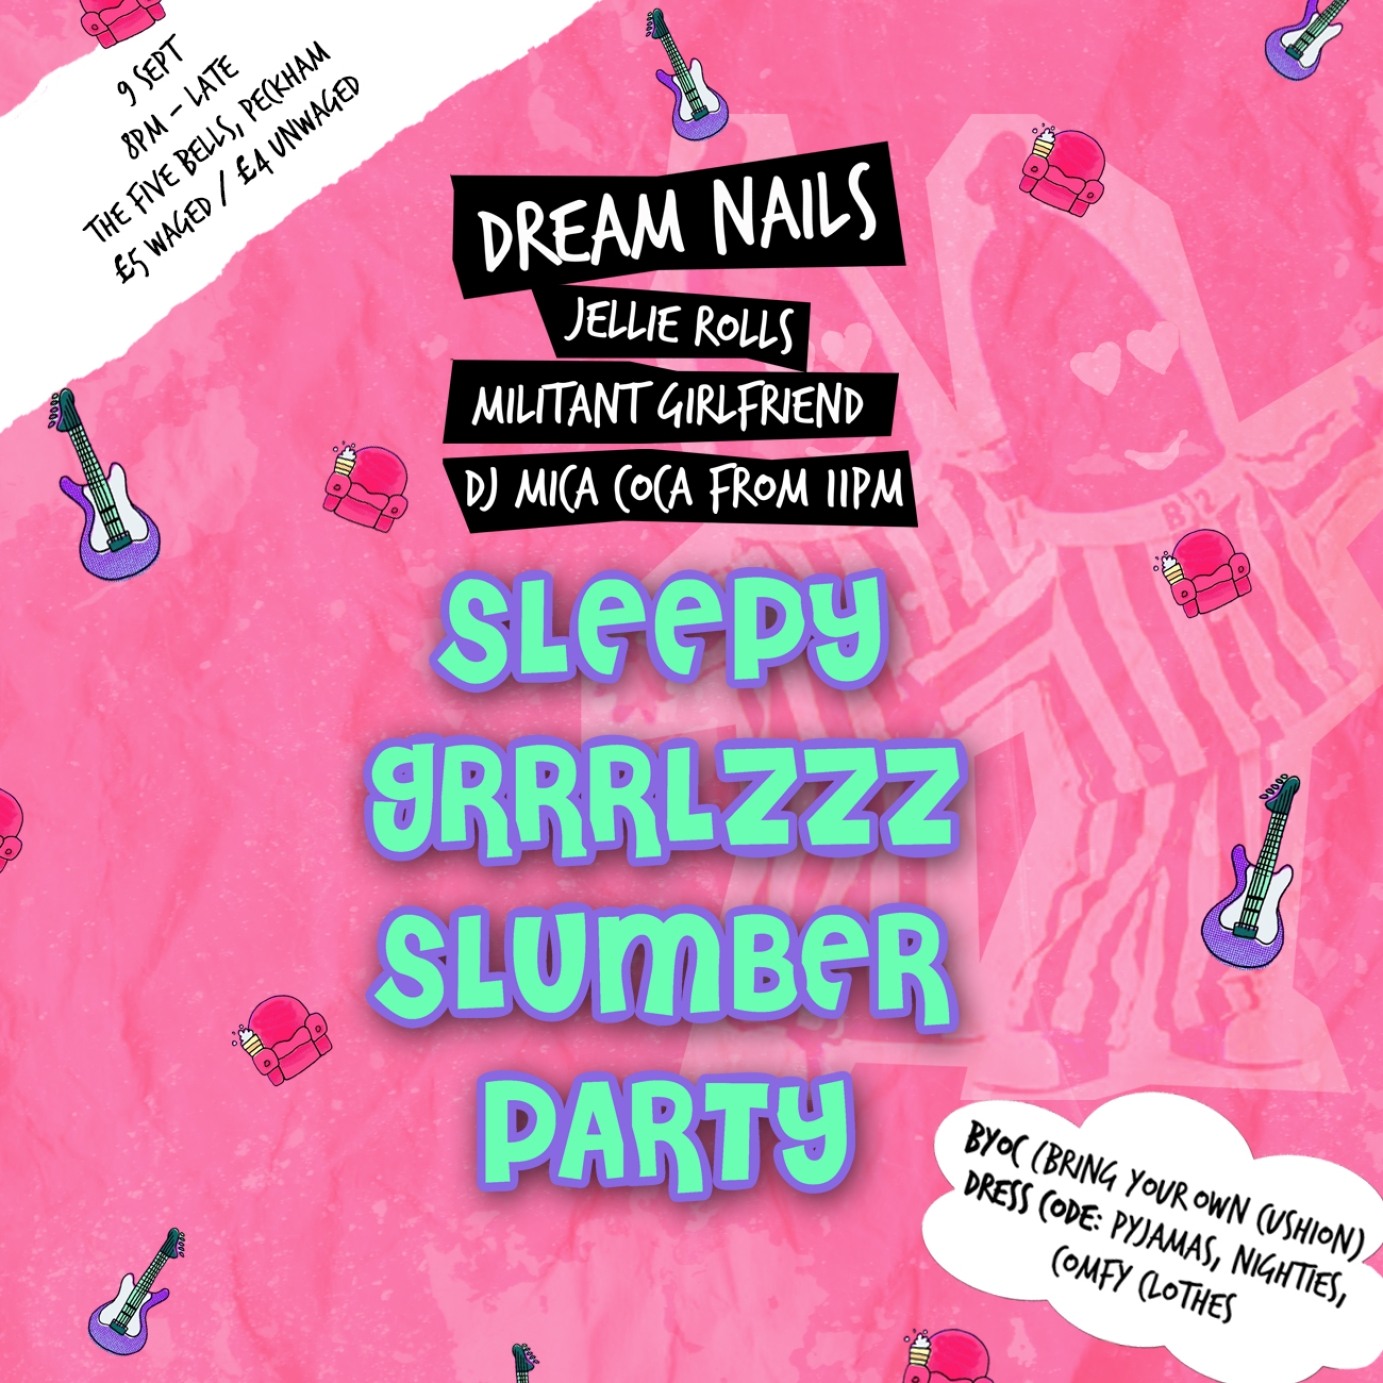 Dream Nails - Sleepy Grrrlzzz Slumber Party Poster